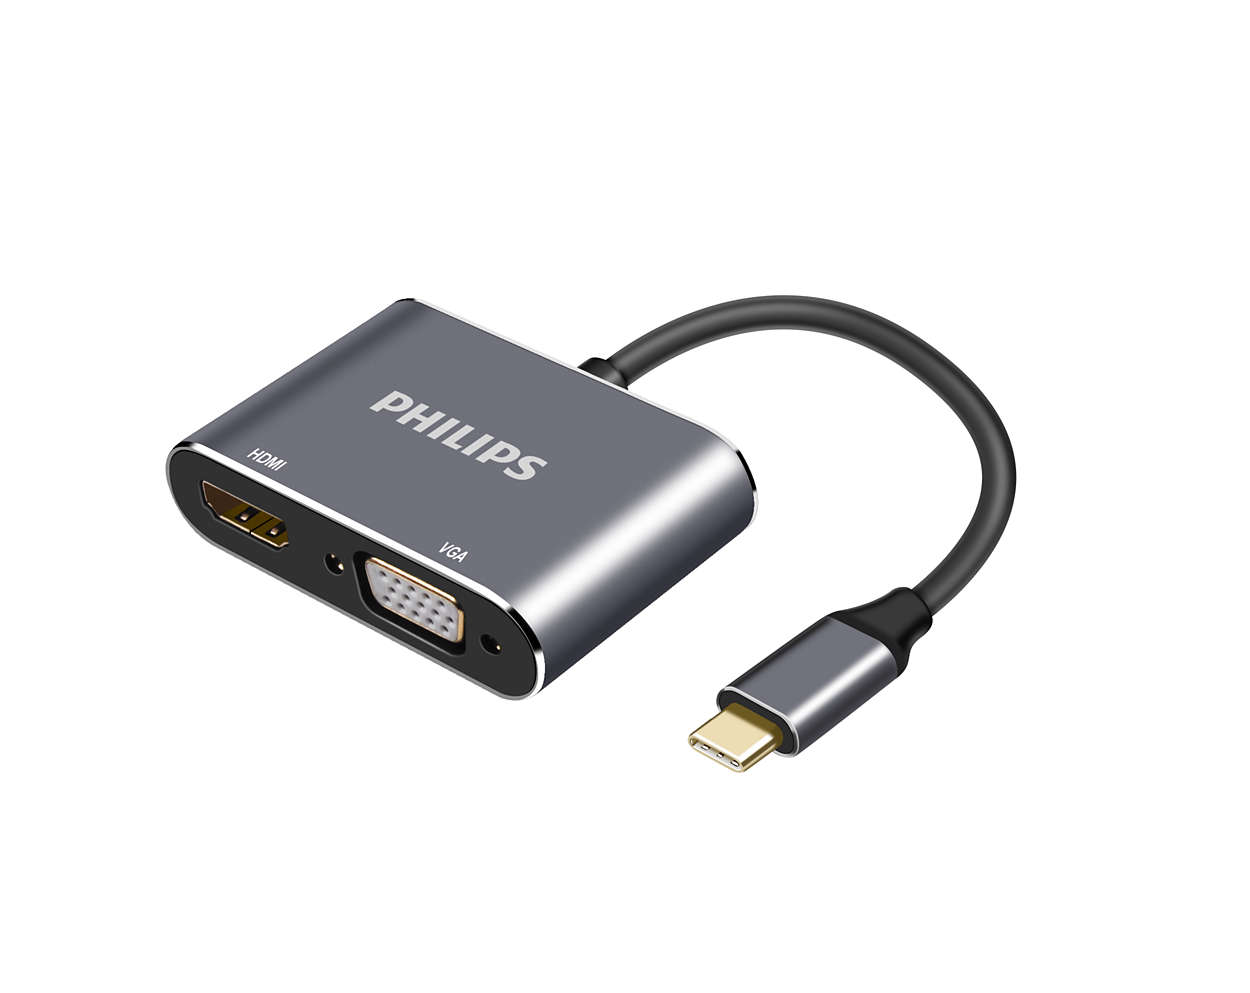 Adaptor USB-C ke HDMI dan VGA Premium